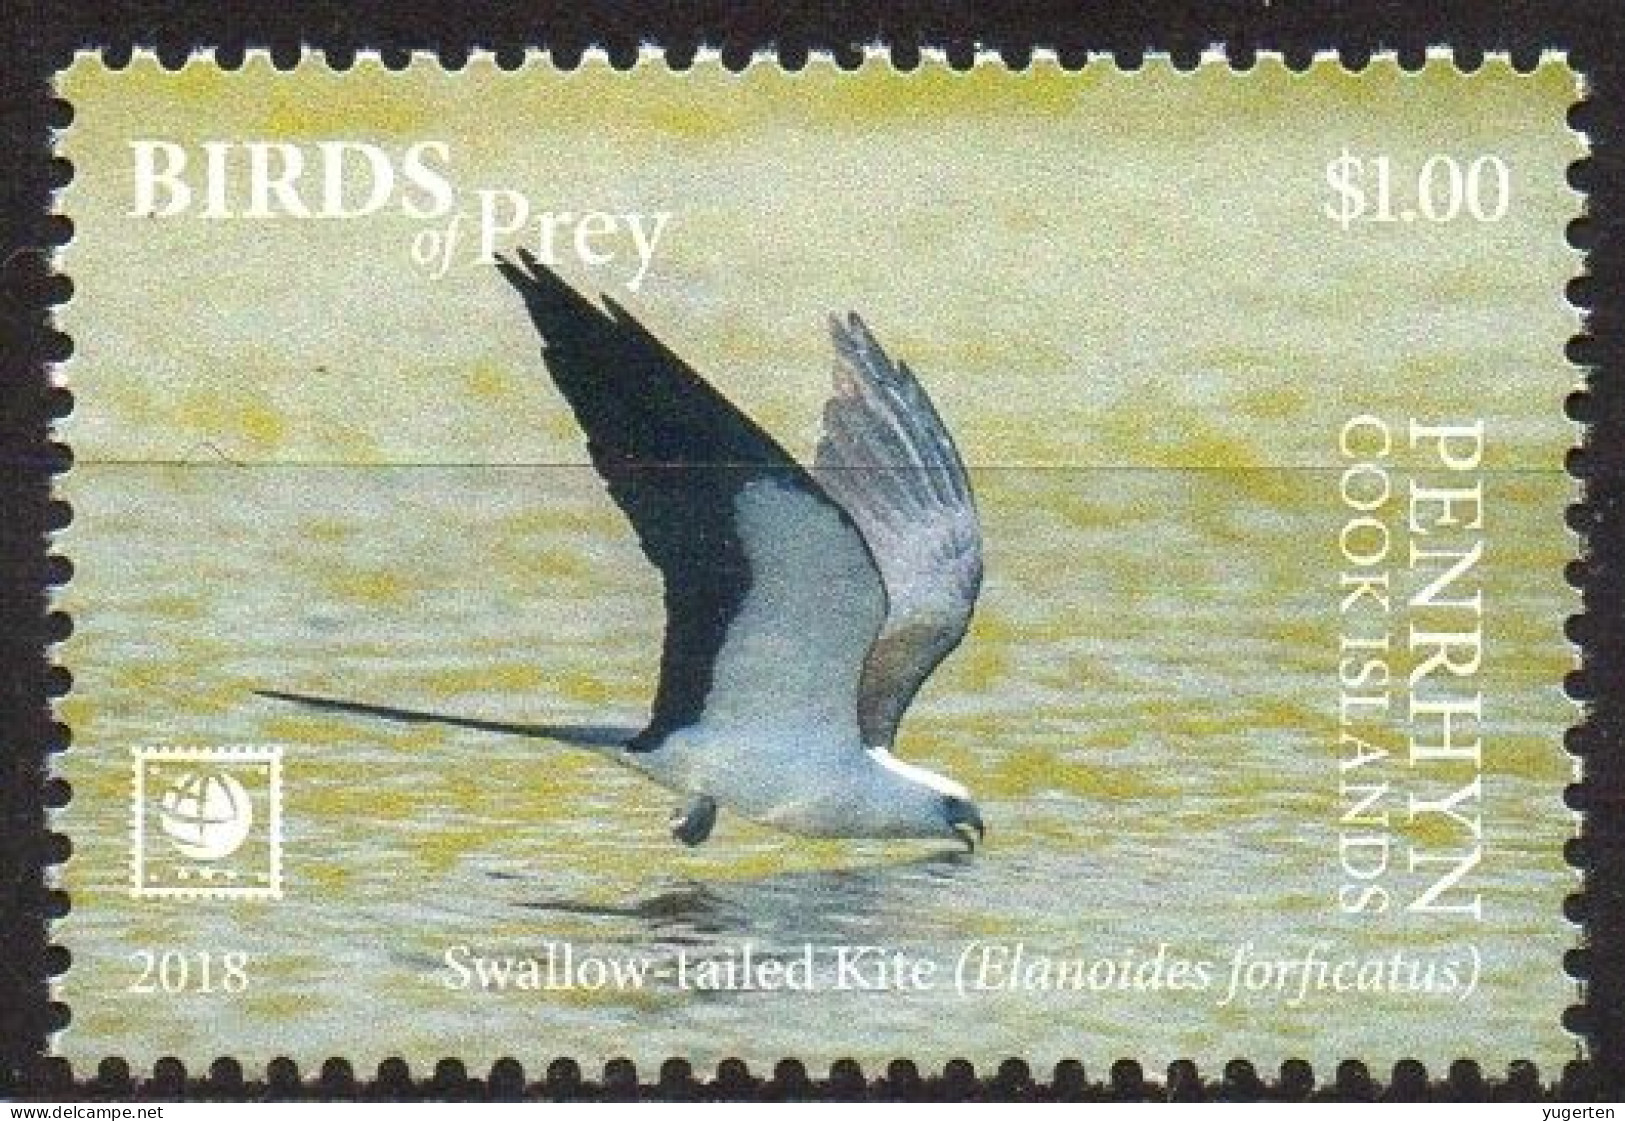 PENRHYN - 1v - MNH -  Swallow-tailed Kite - Eagle Eagles Aquila Aigle Aigles Adler - Birds - Vögel - Aguilas Aquile - Aquile & Rapaci Diurni